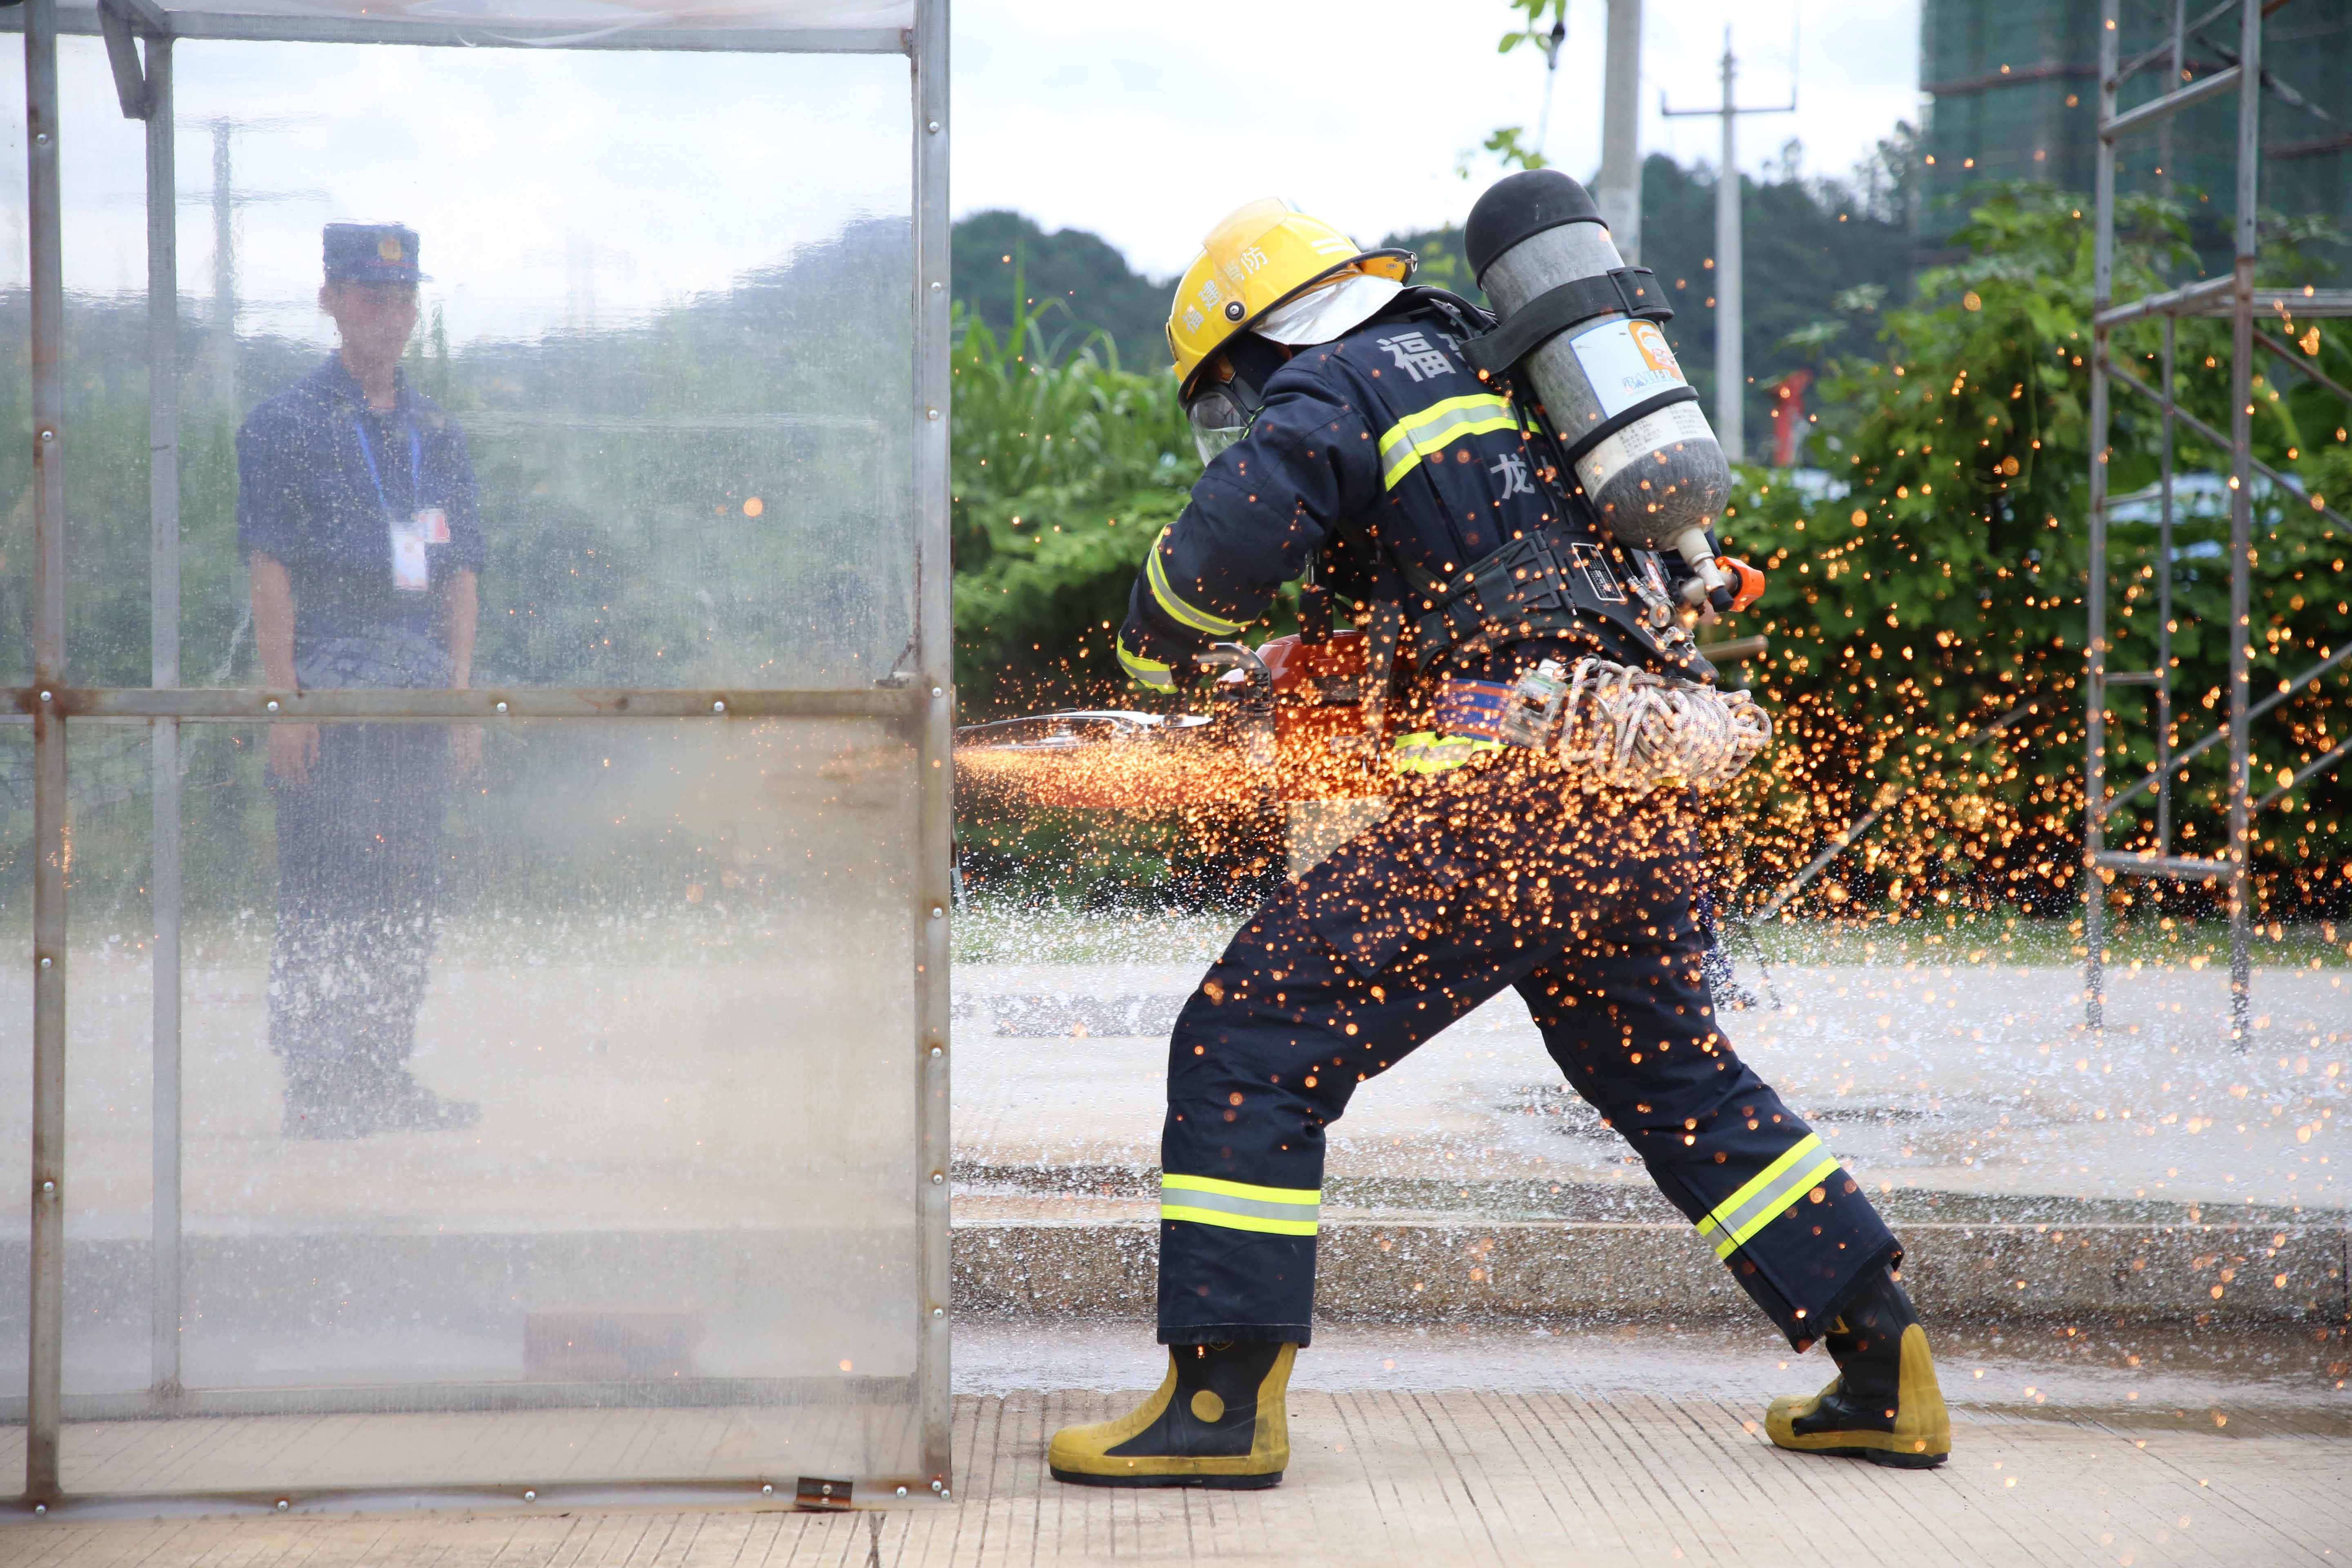 7月6日,在福建龙岩消防训练基地,一名消防队员利用无齿锯切割钢板